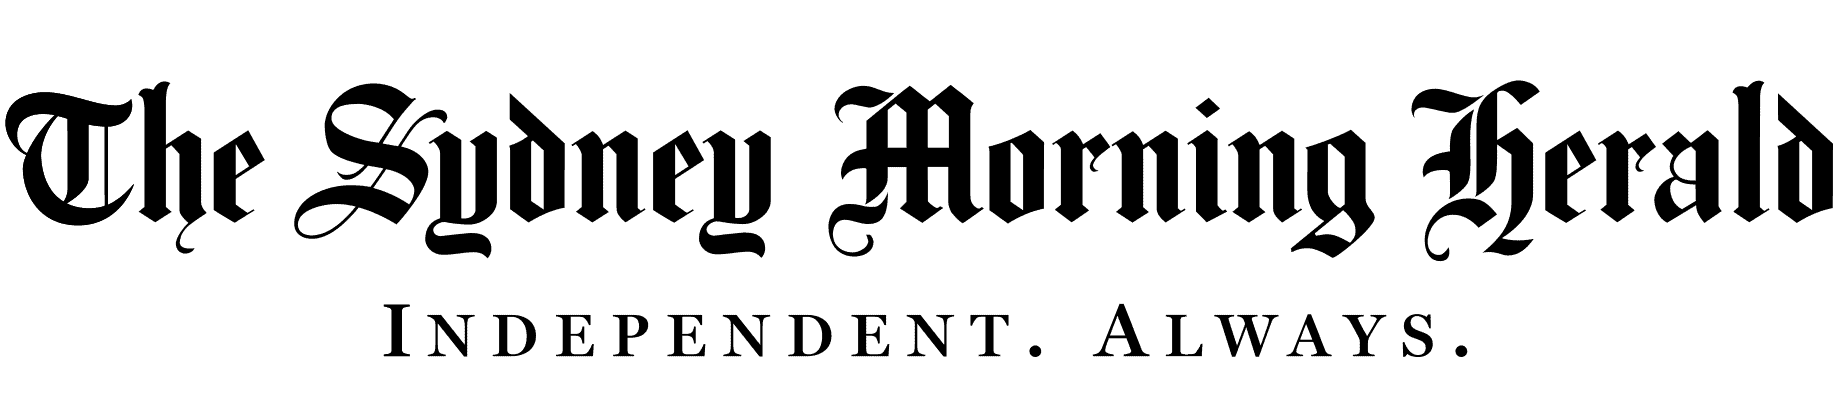 smh-logo-tagline